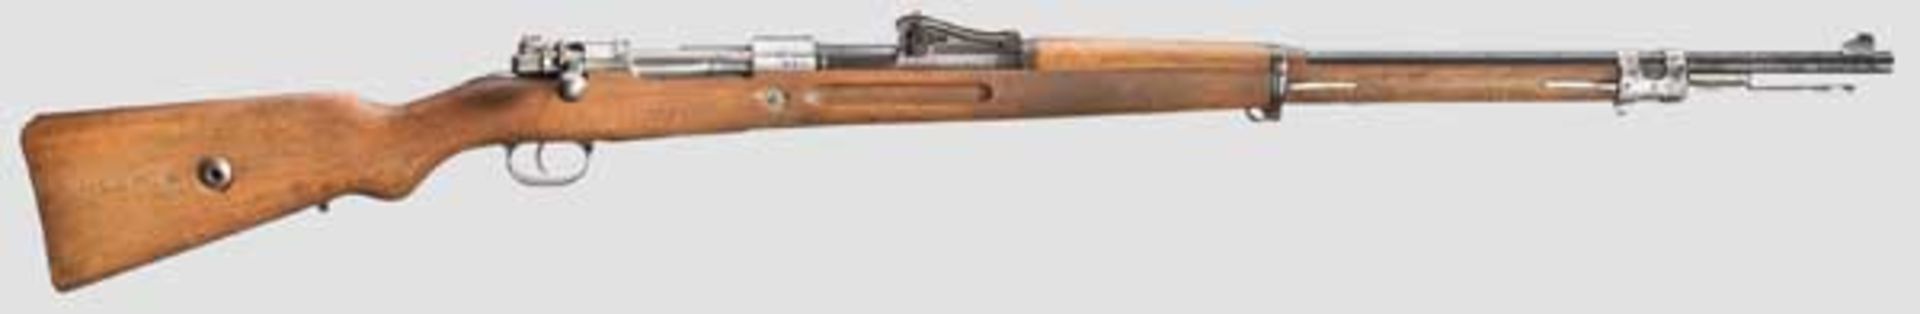 Gewehr 98, Mauser 1918 Kal. 8 x 57, Nr. 5629 l. Vollkommen nummerngleich inkl. Schrauben und